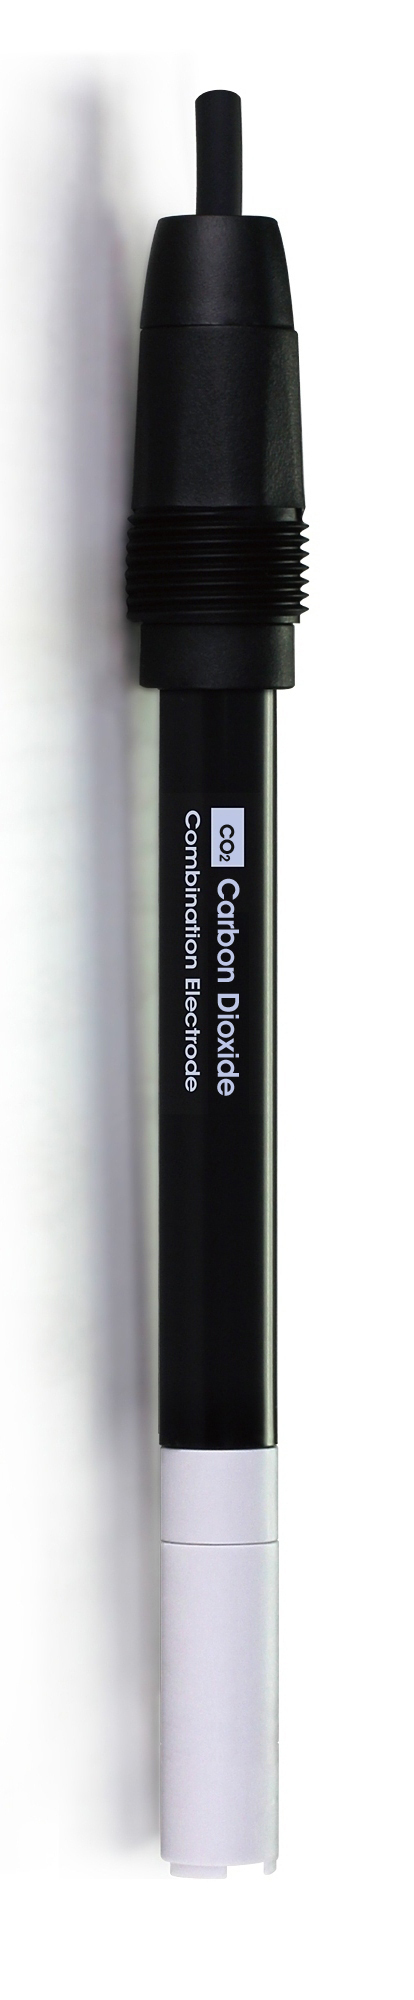 CS6510CO2 A Carbon Dioxide Ion Selective Electrode sensor